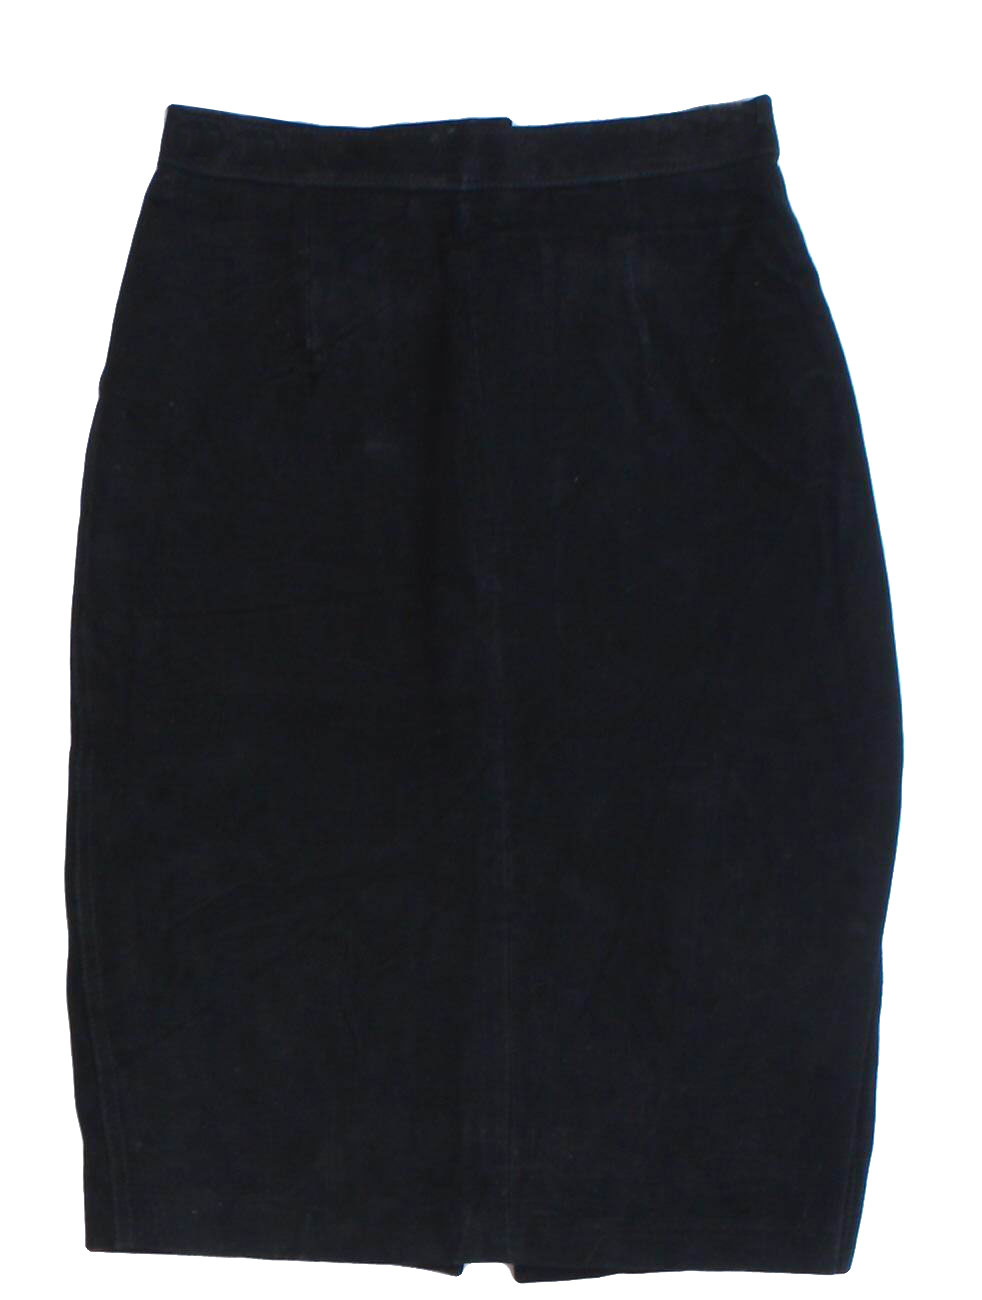 Vintage 80s Skirt: 80s -G3- Womens black background nylon lined totally ...